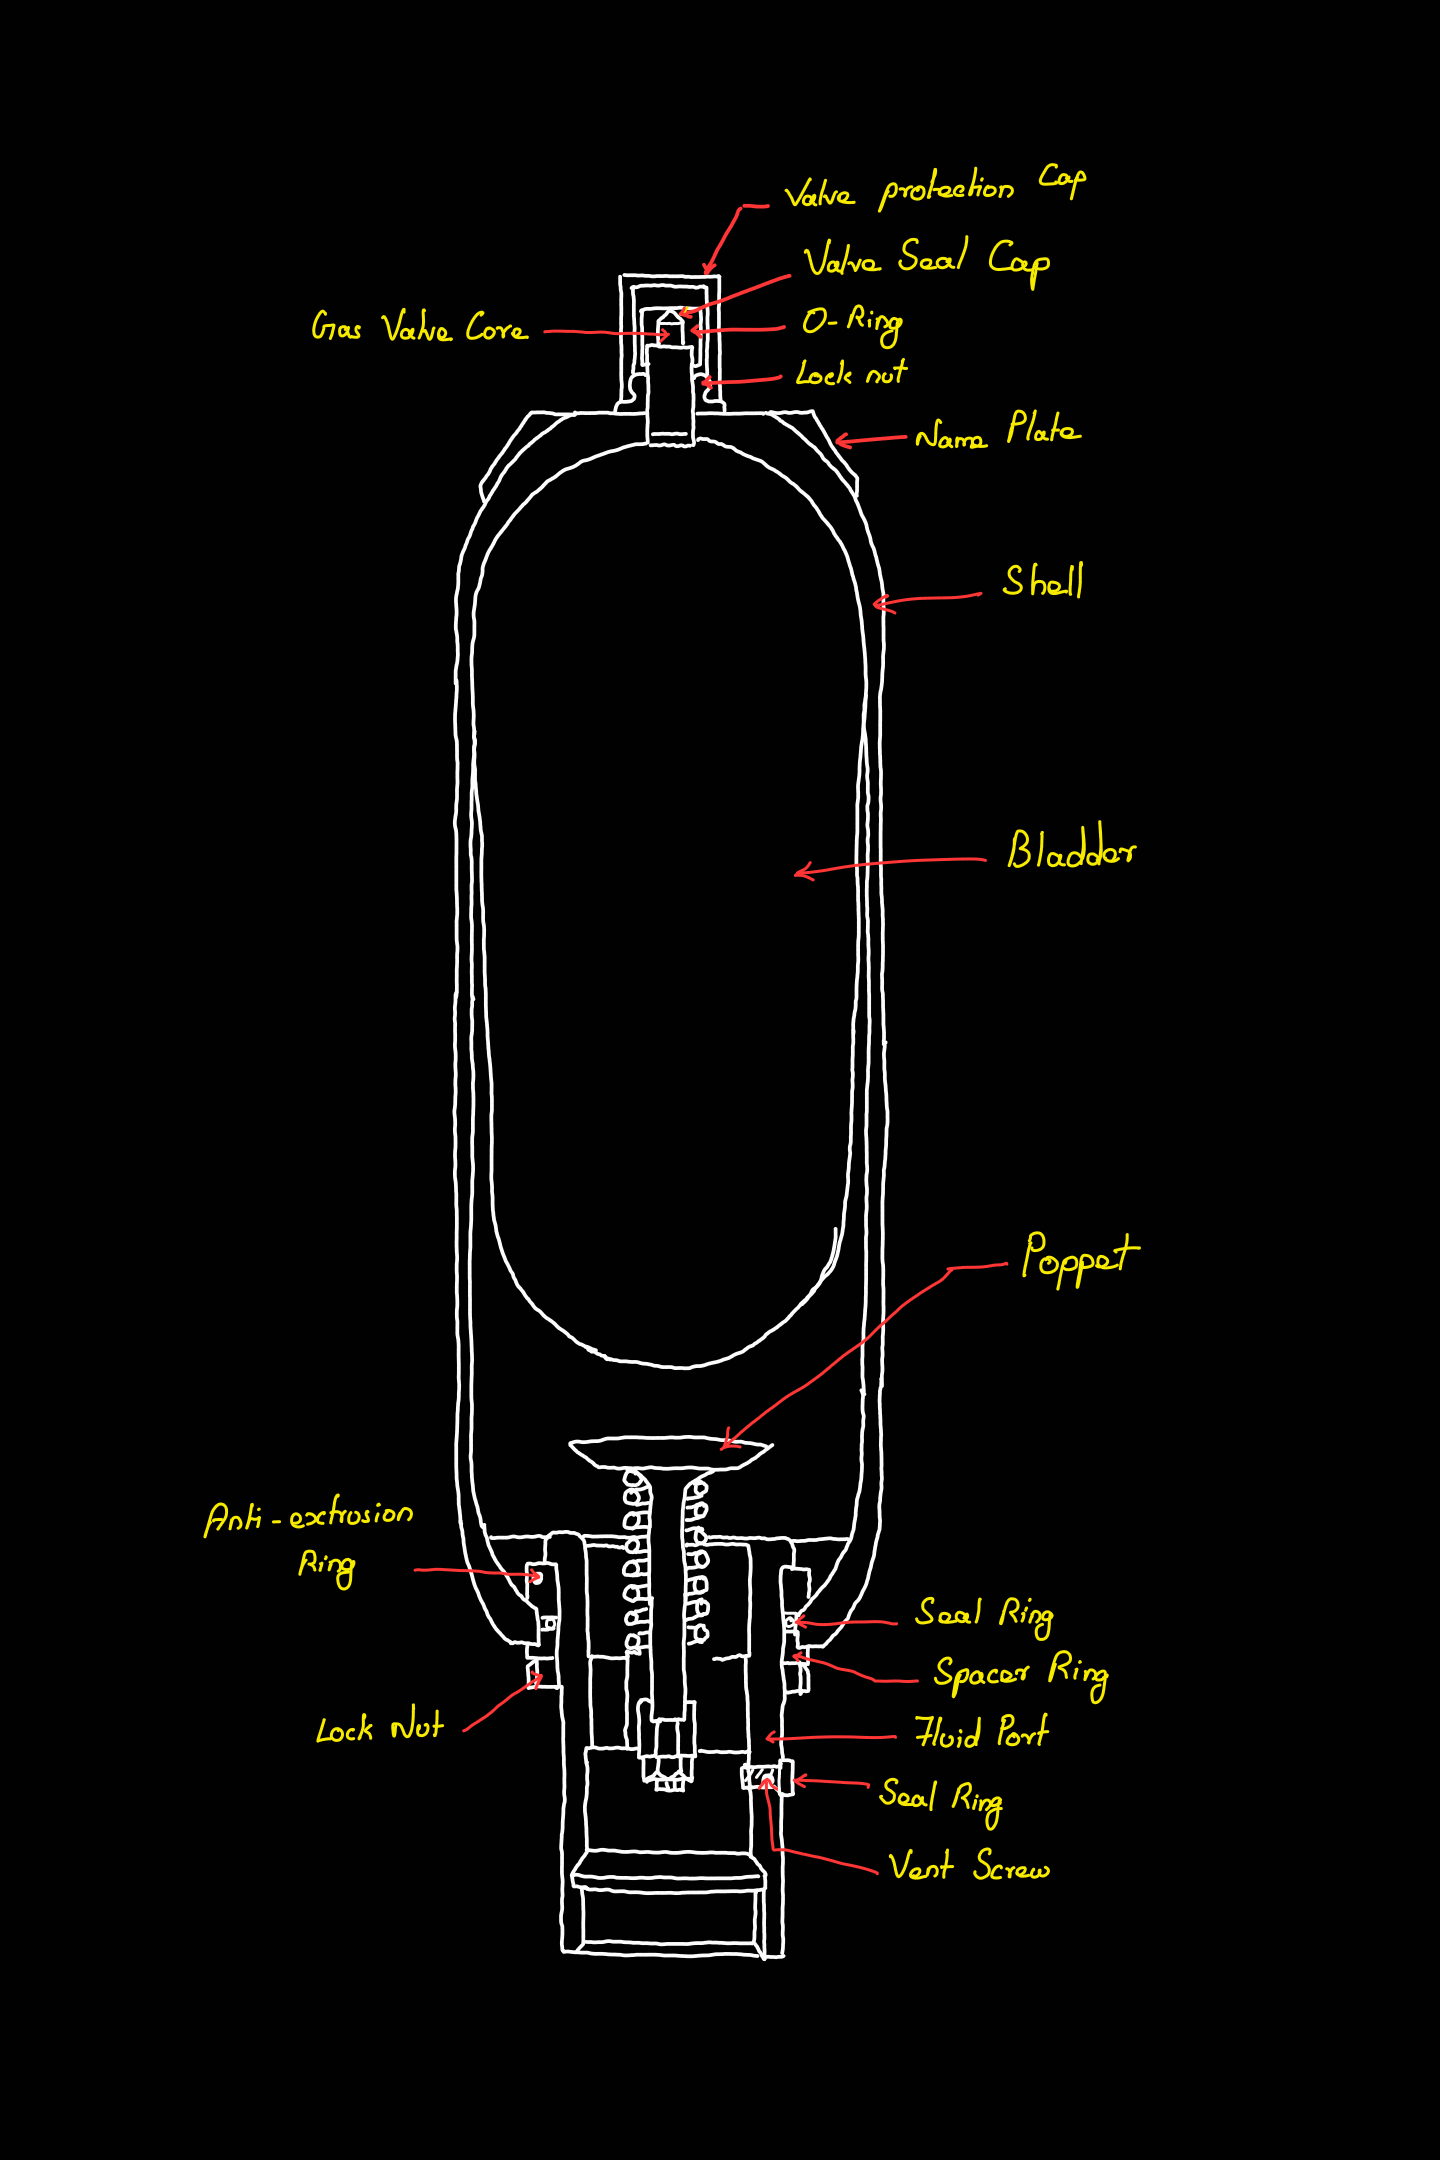 Hydrogen refuelling based on bladder accumulator-based compression